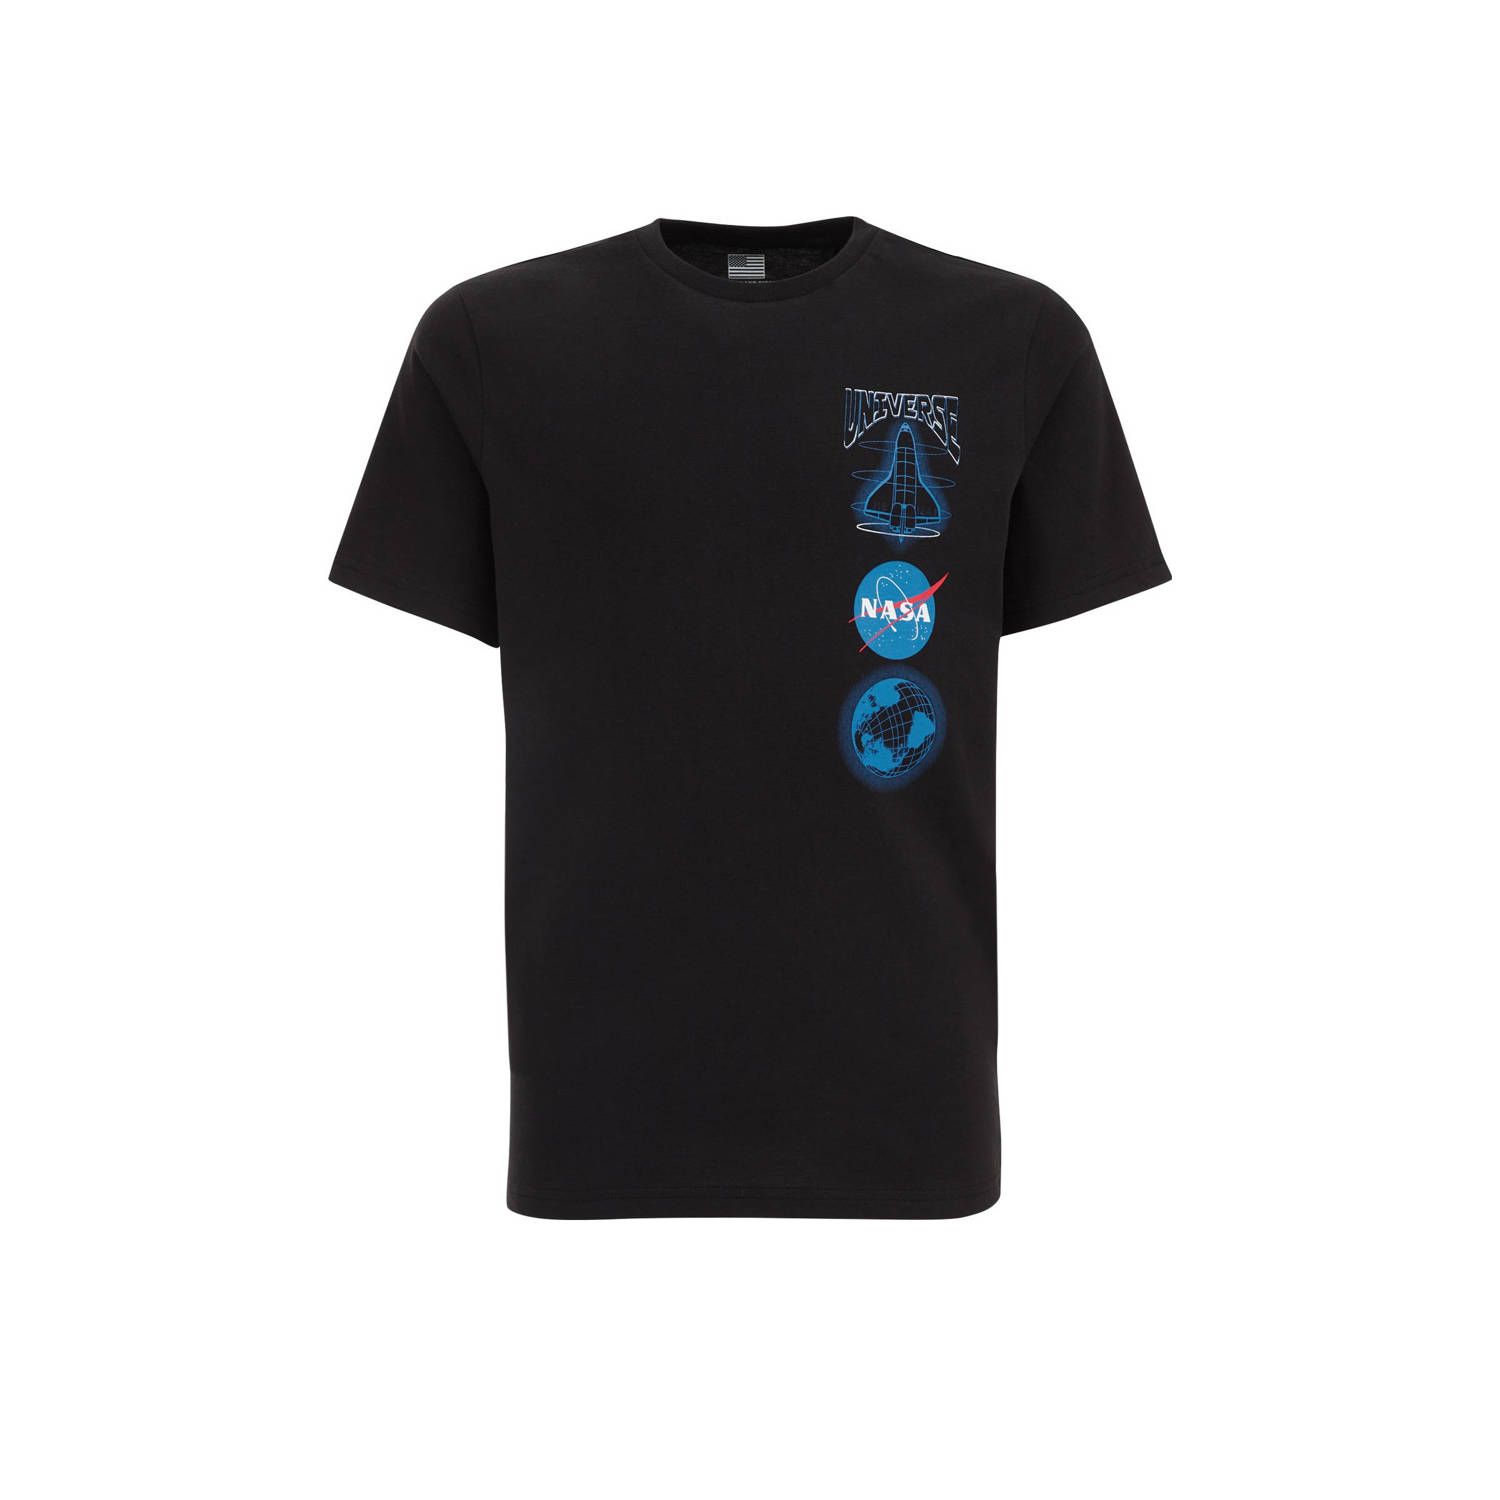 WE Fashion T-shirt met backprint zwart blauw Jongens Katoen Ronde hals 110 116